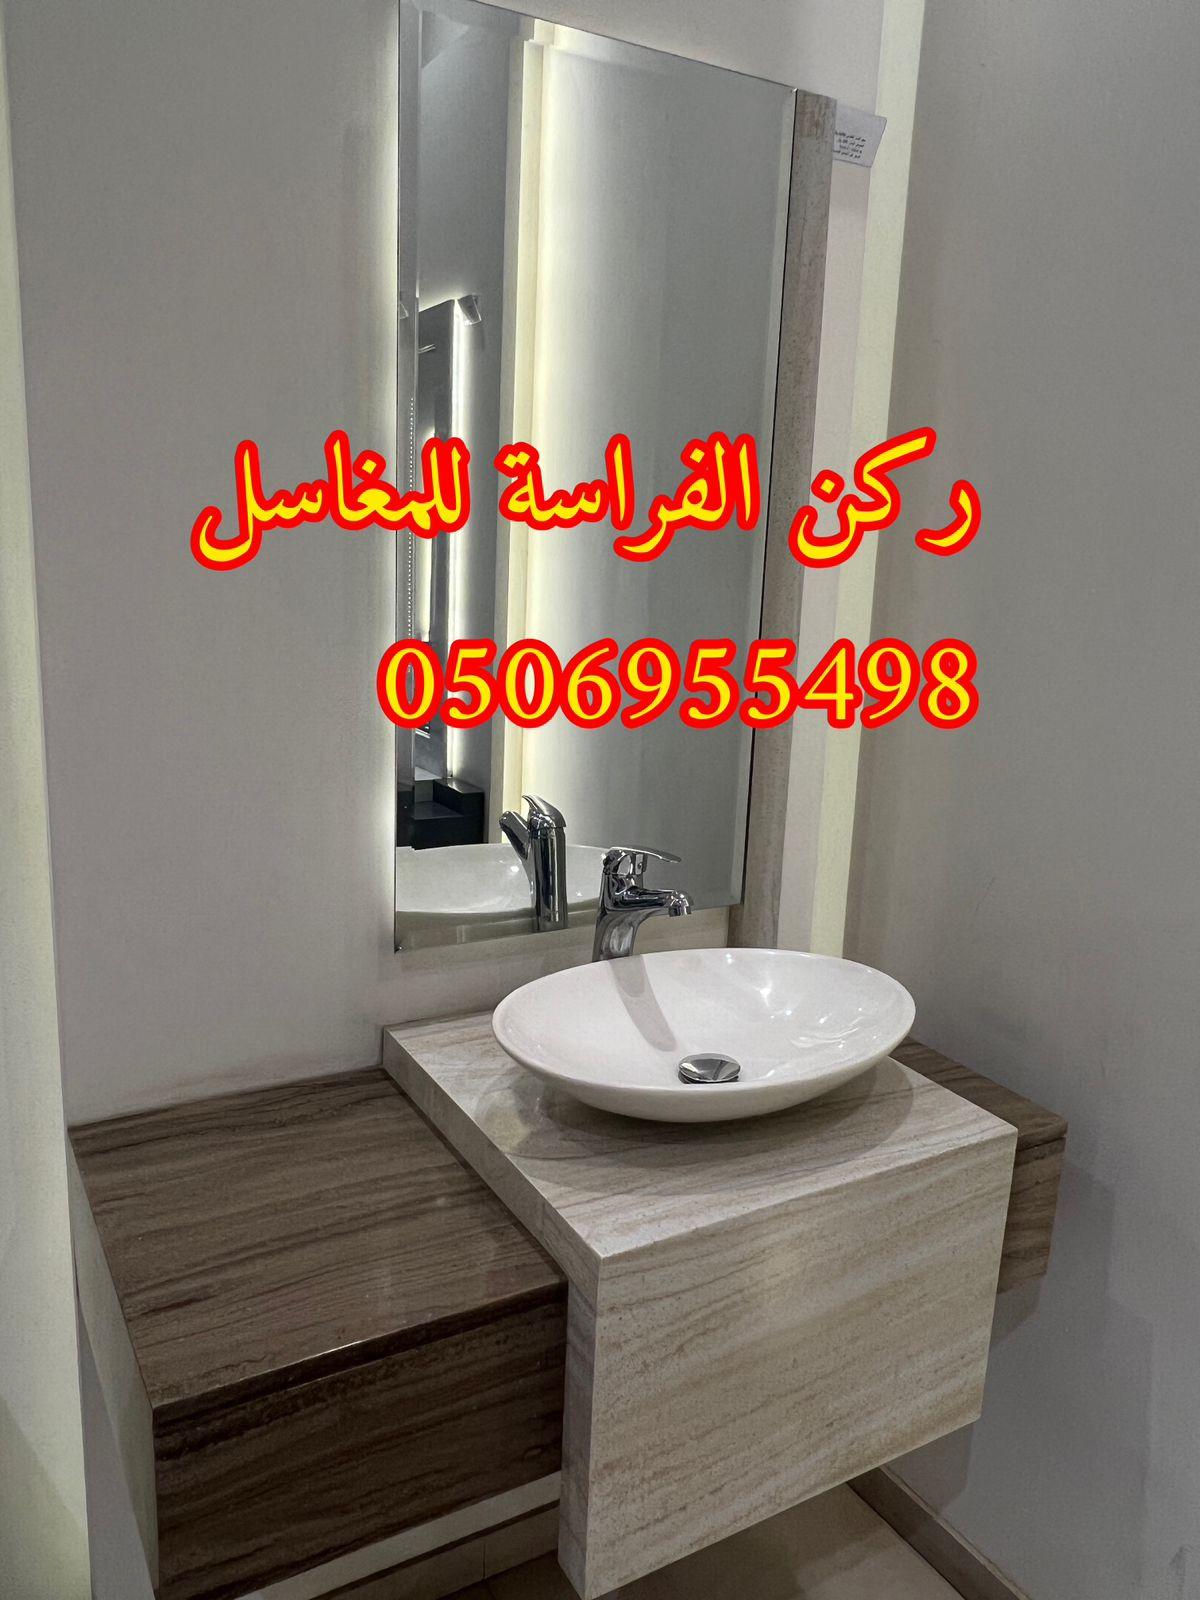 الرياض - تصاميم مغاسل رخام للمجالس في الرياض,0506955498 868453005